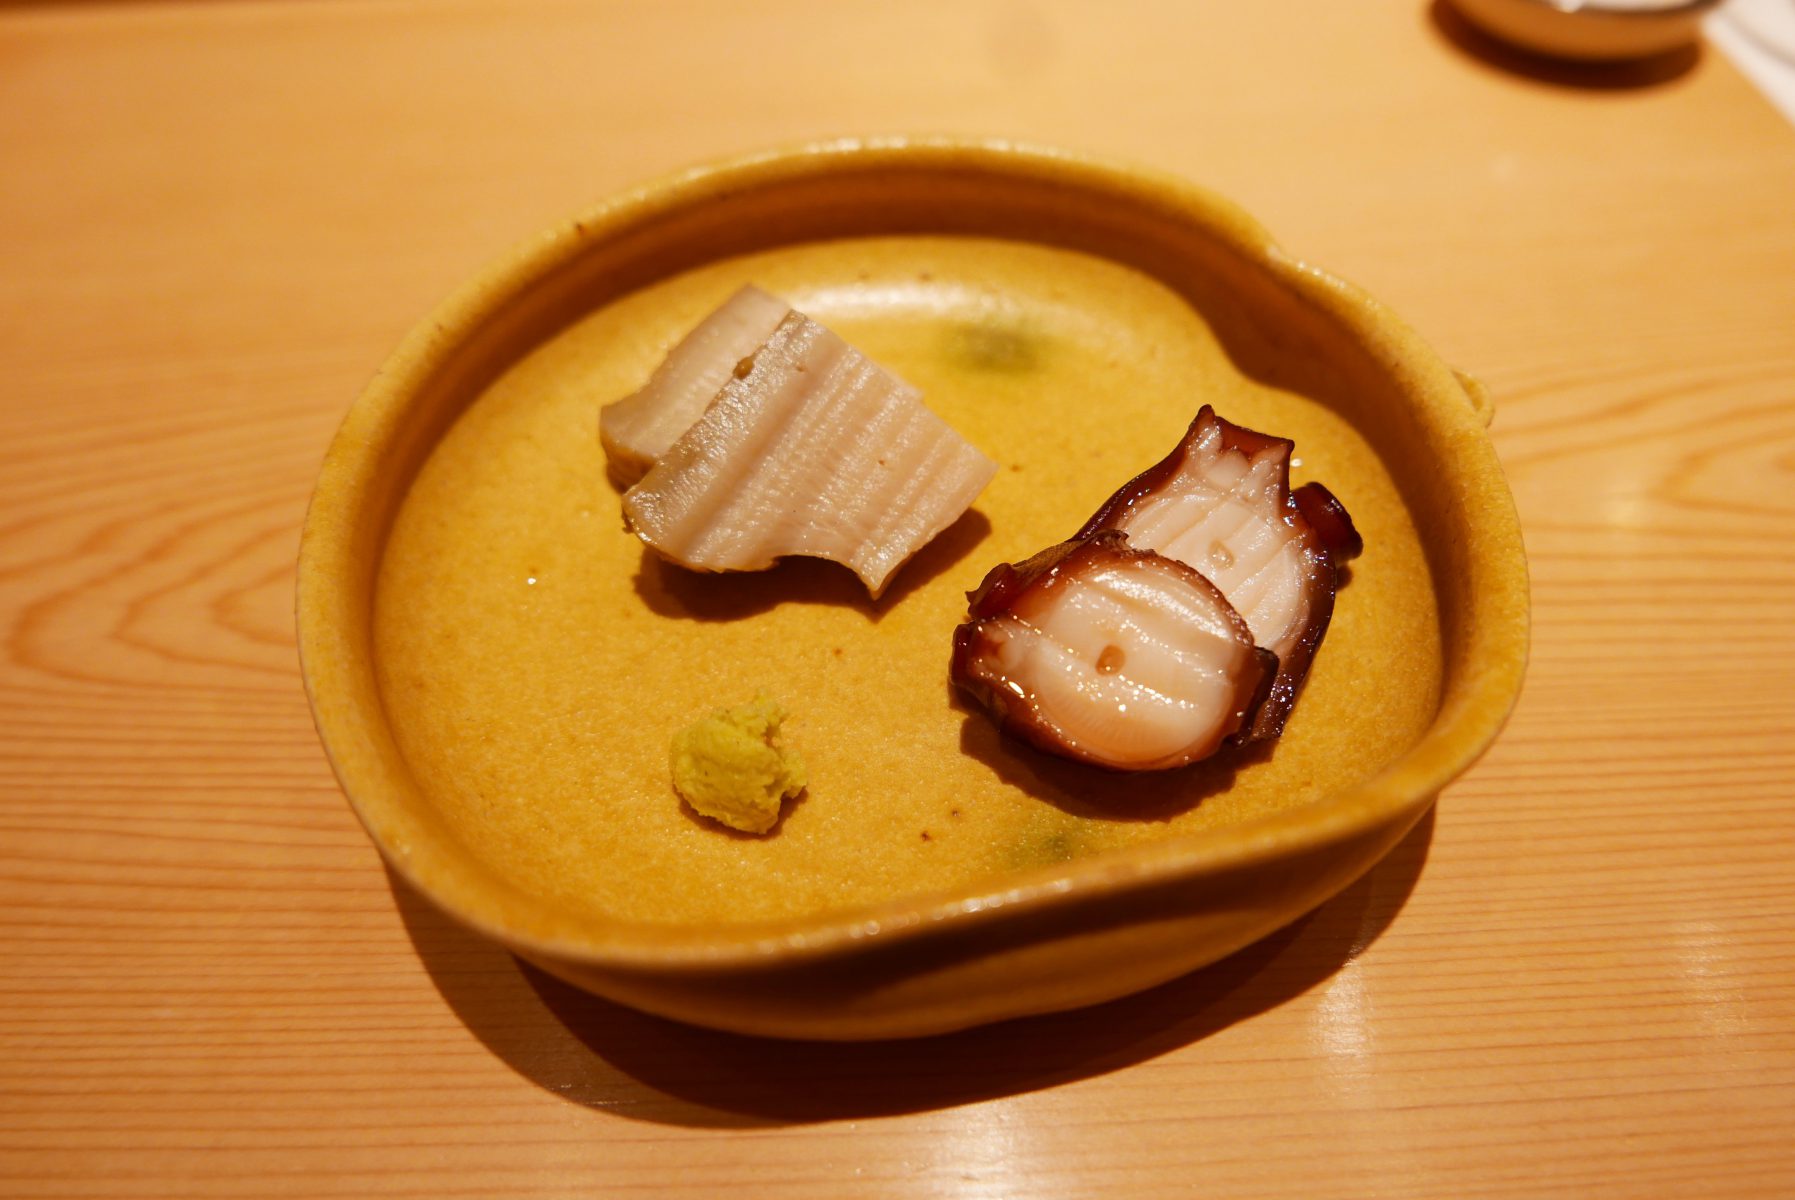 Abalone and octopus at Saito